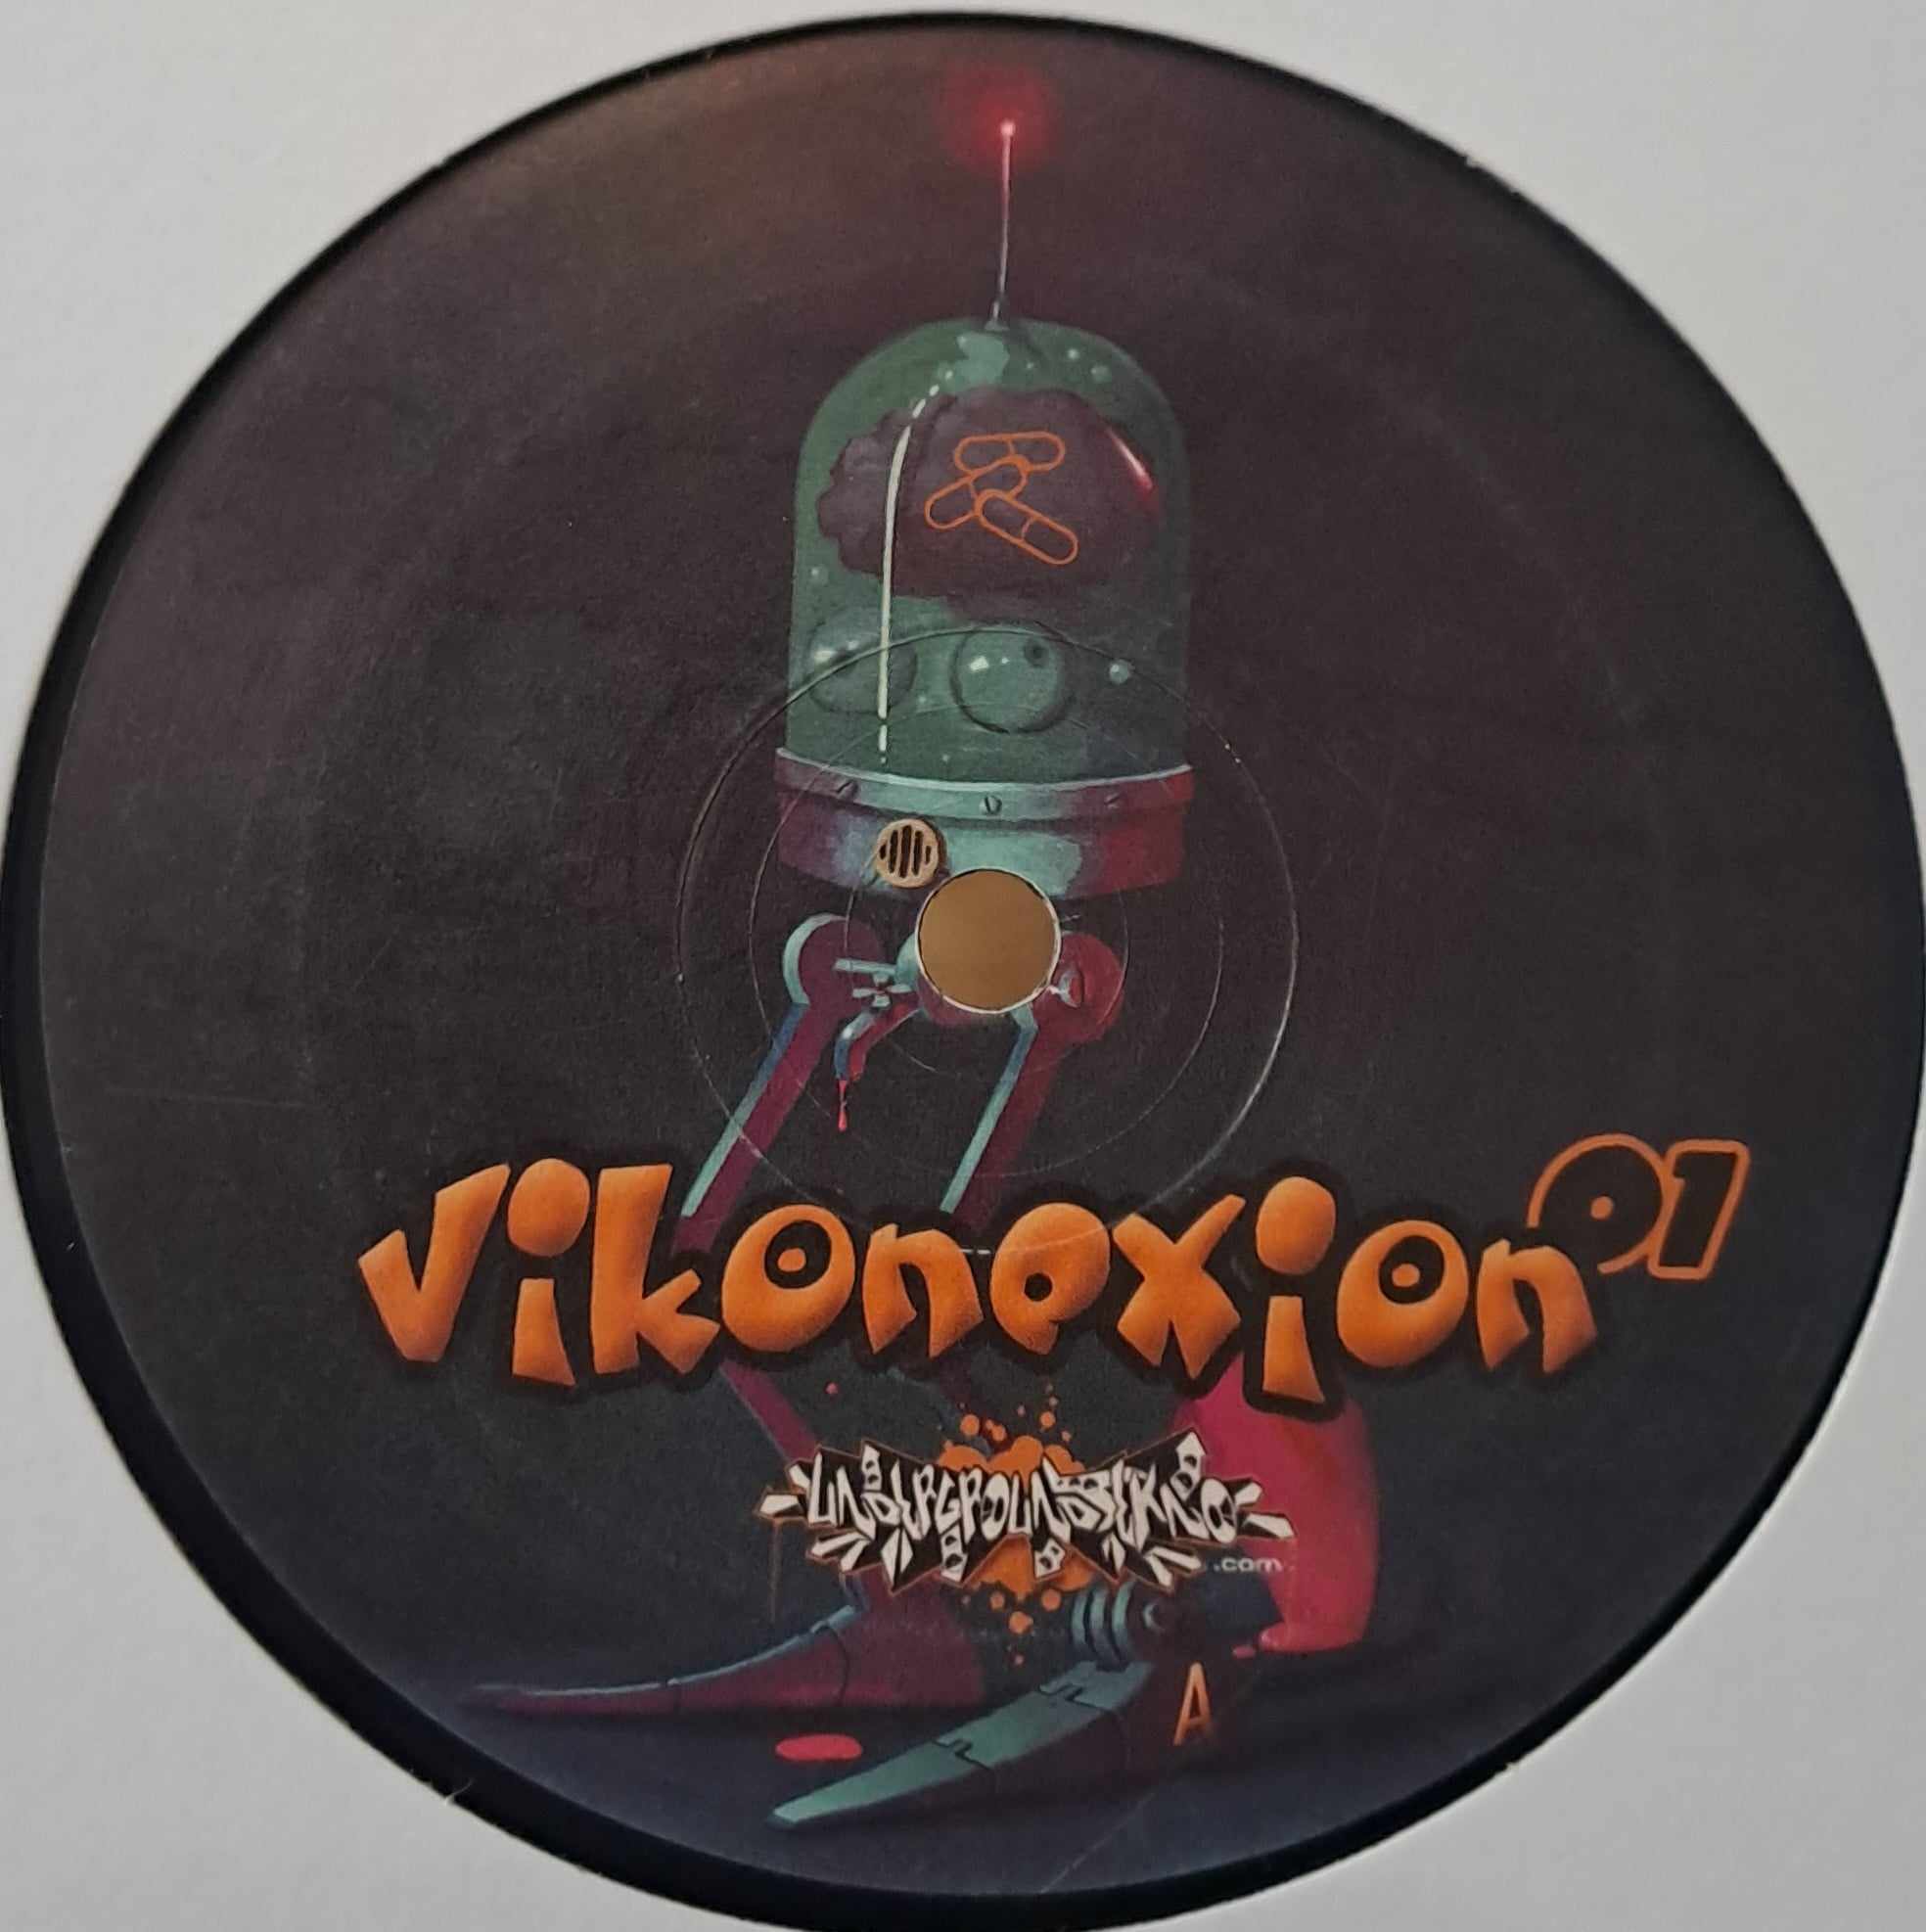 Vikonexion 01 - vinyle freetekno